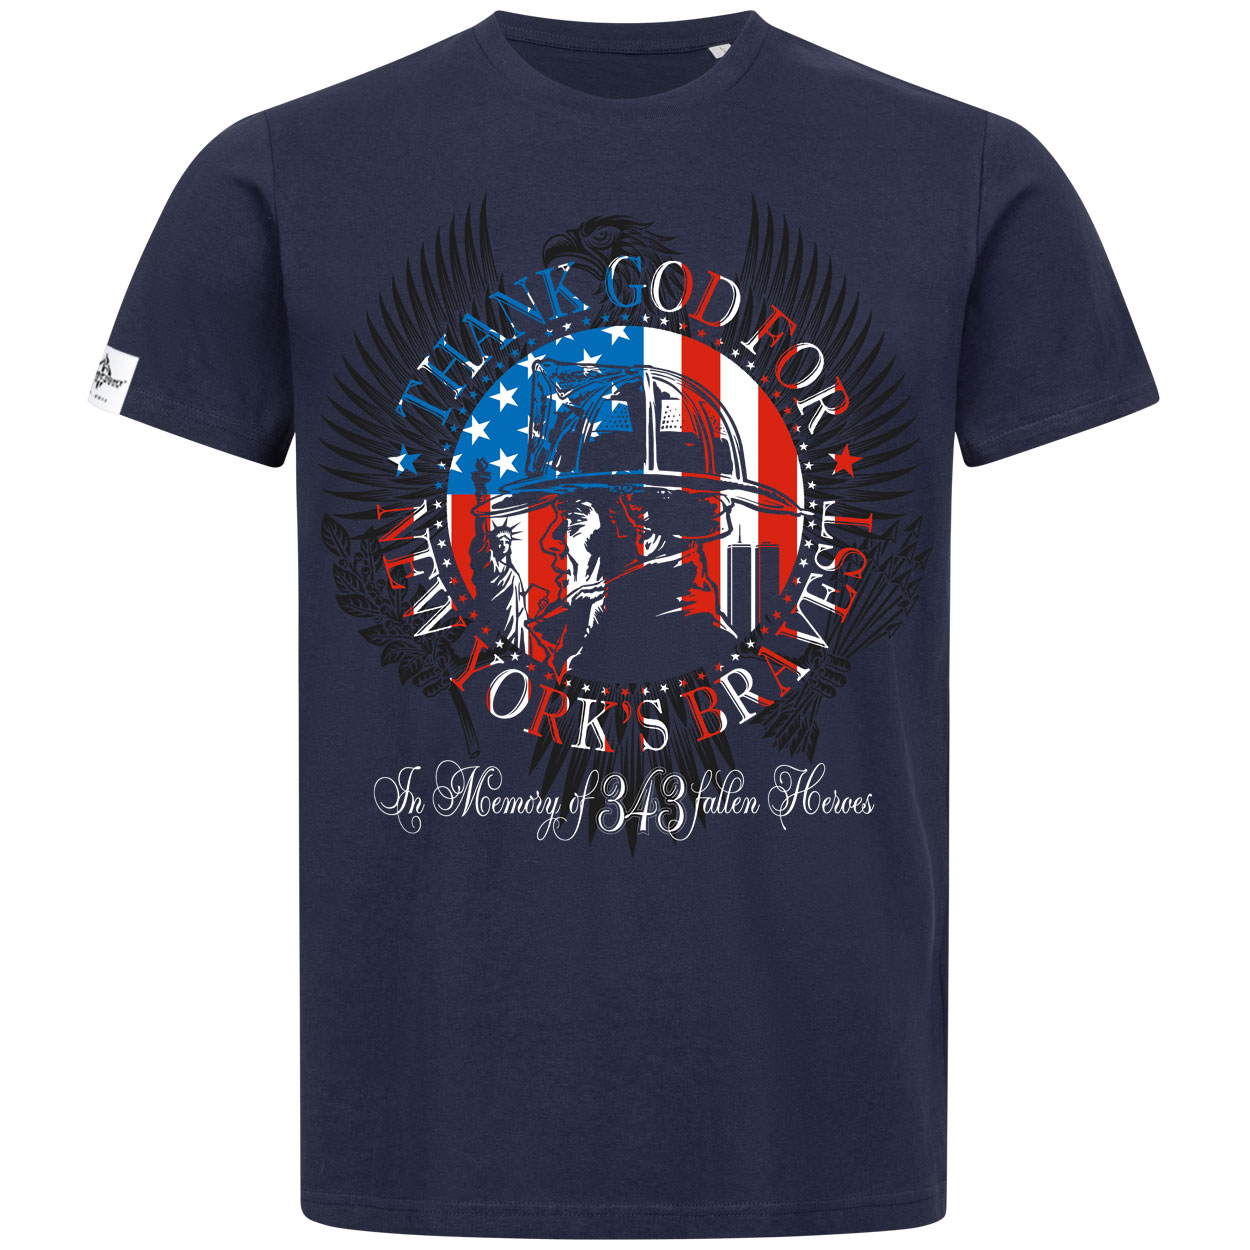 New Yorks Bravest - Feuerwehrmann T-Shirt